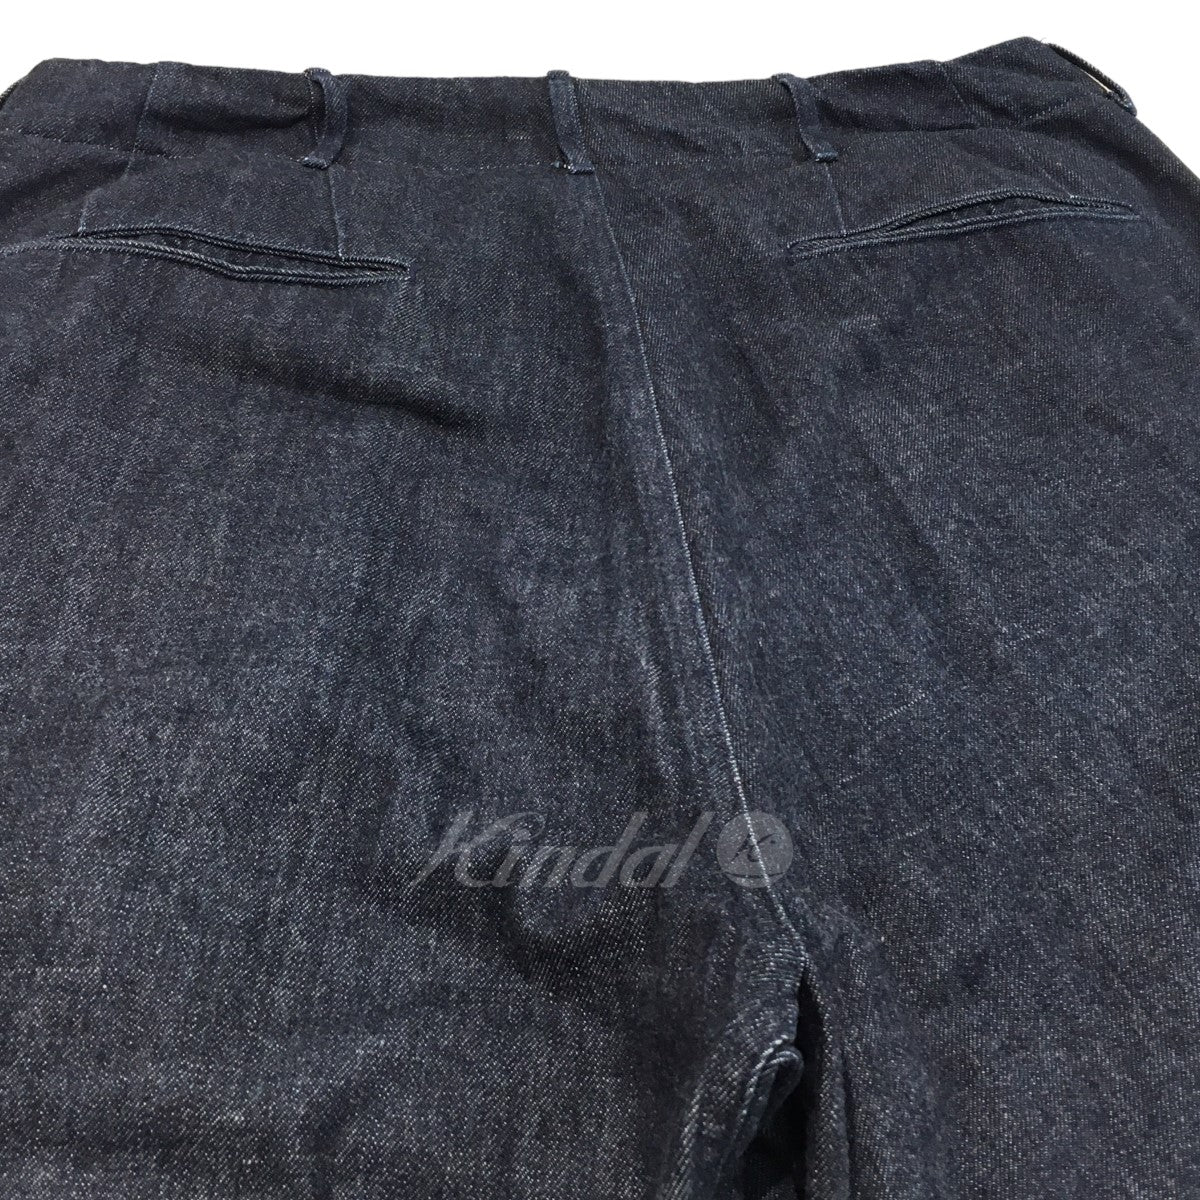 nanamica(ナナミカ) 「Wide Denim Pants」ワイドデニムパンツ SUCS306 ...